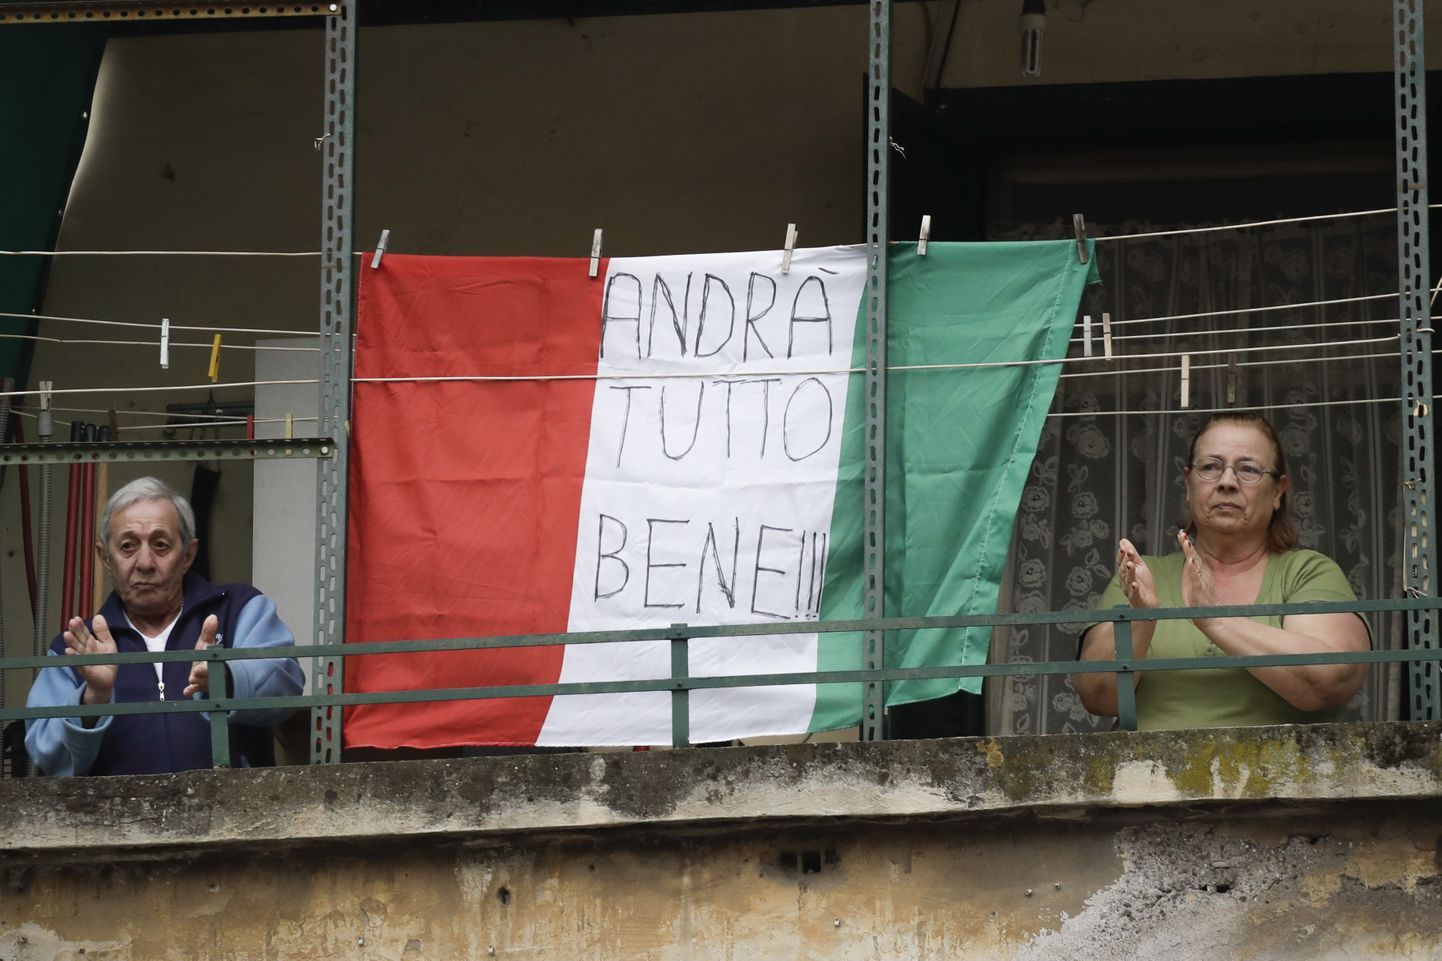 Надпись на итальянском флаге Andrà tutto bene ("Всё будет хорошо").